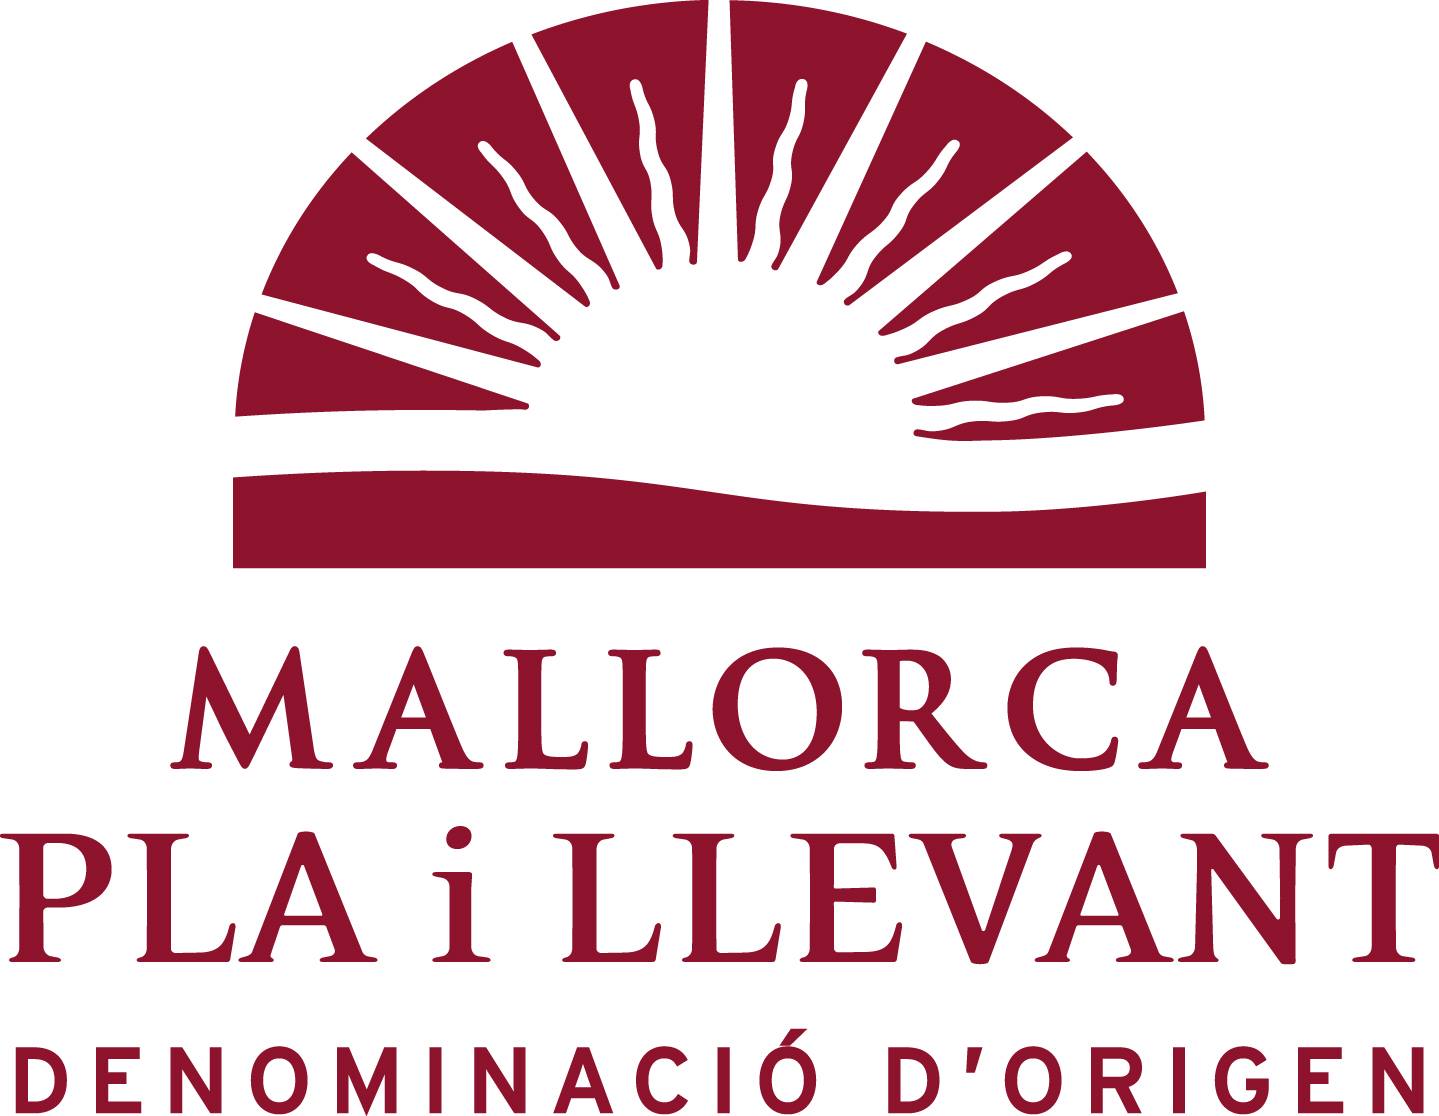 L’any 2022 es comercialitzaren 10.317 hl de vi DO Pla i Llevant, un 7,4% més que l’any 2021  - Notícies - Illes Balears - Productes agroalimentaris, denominacions d'origen i gastronomia balear